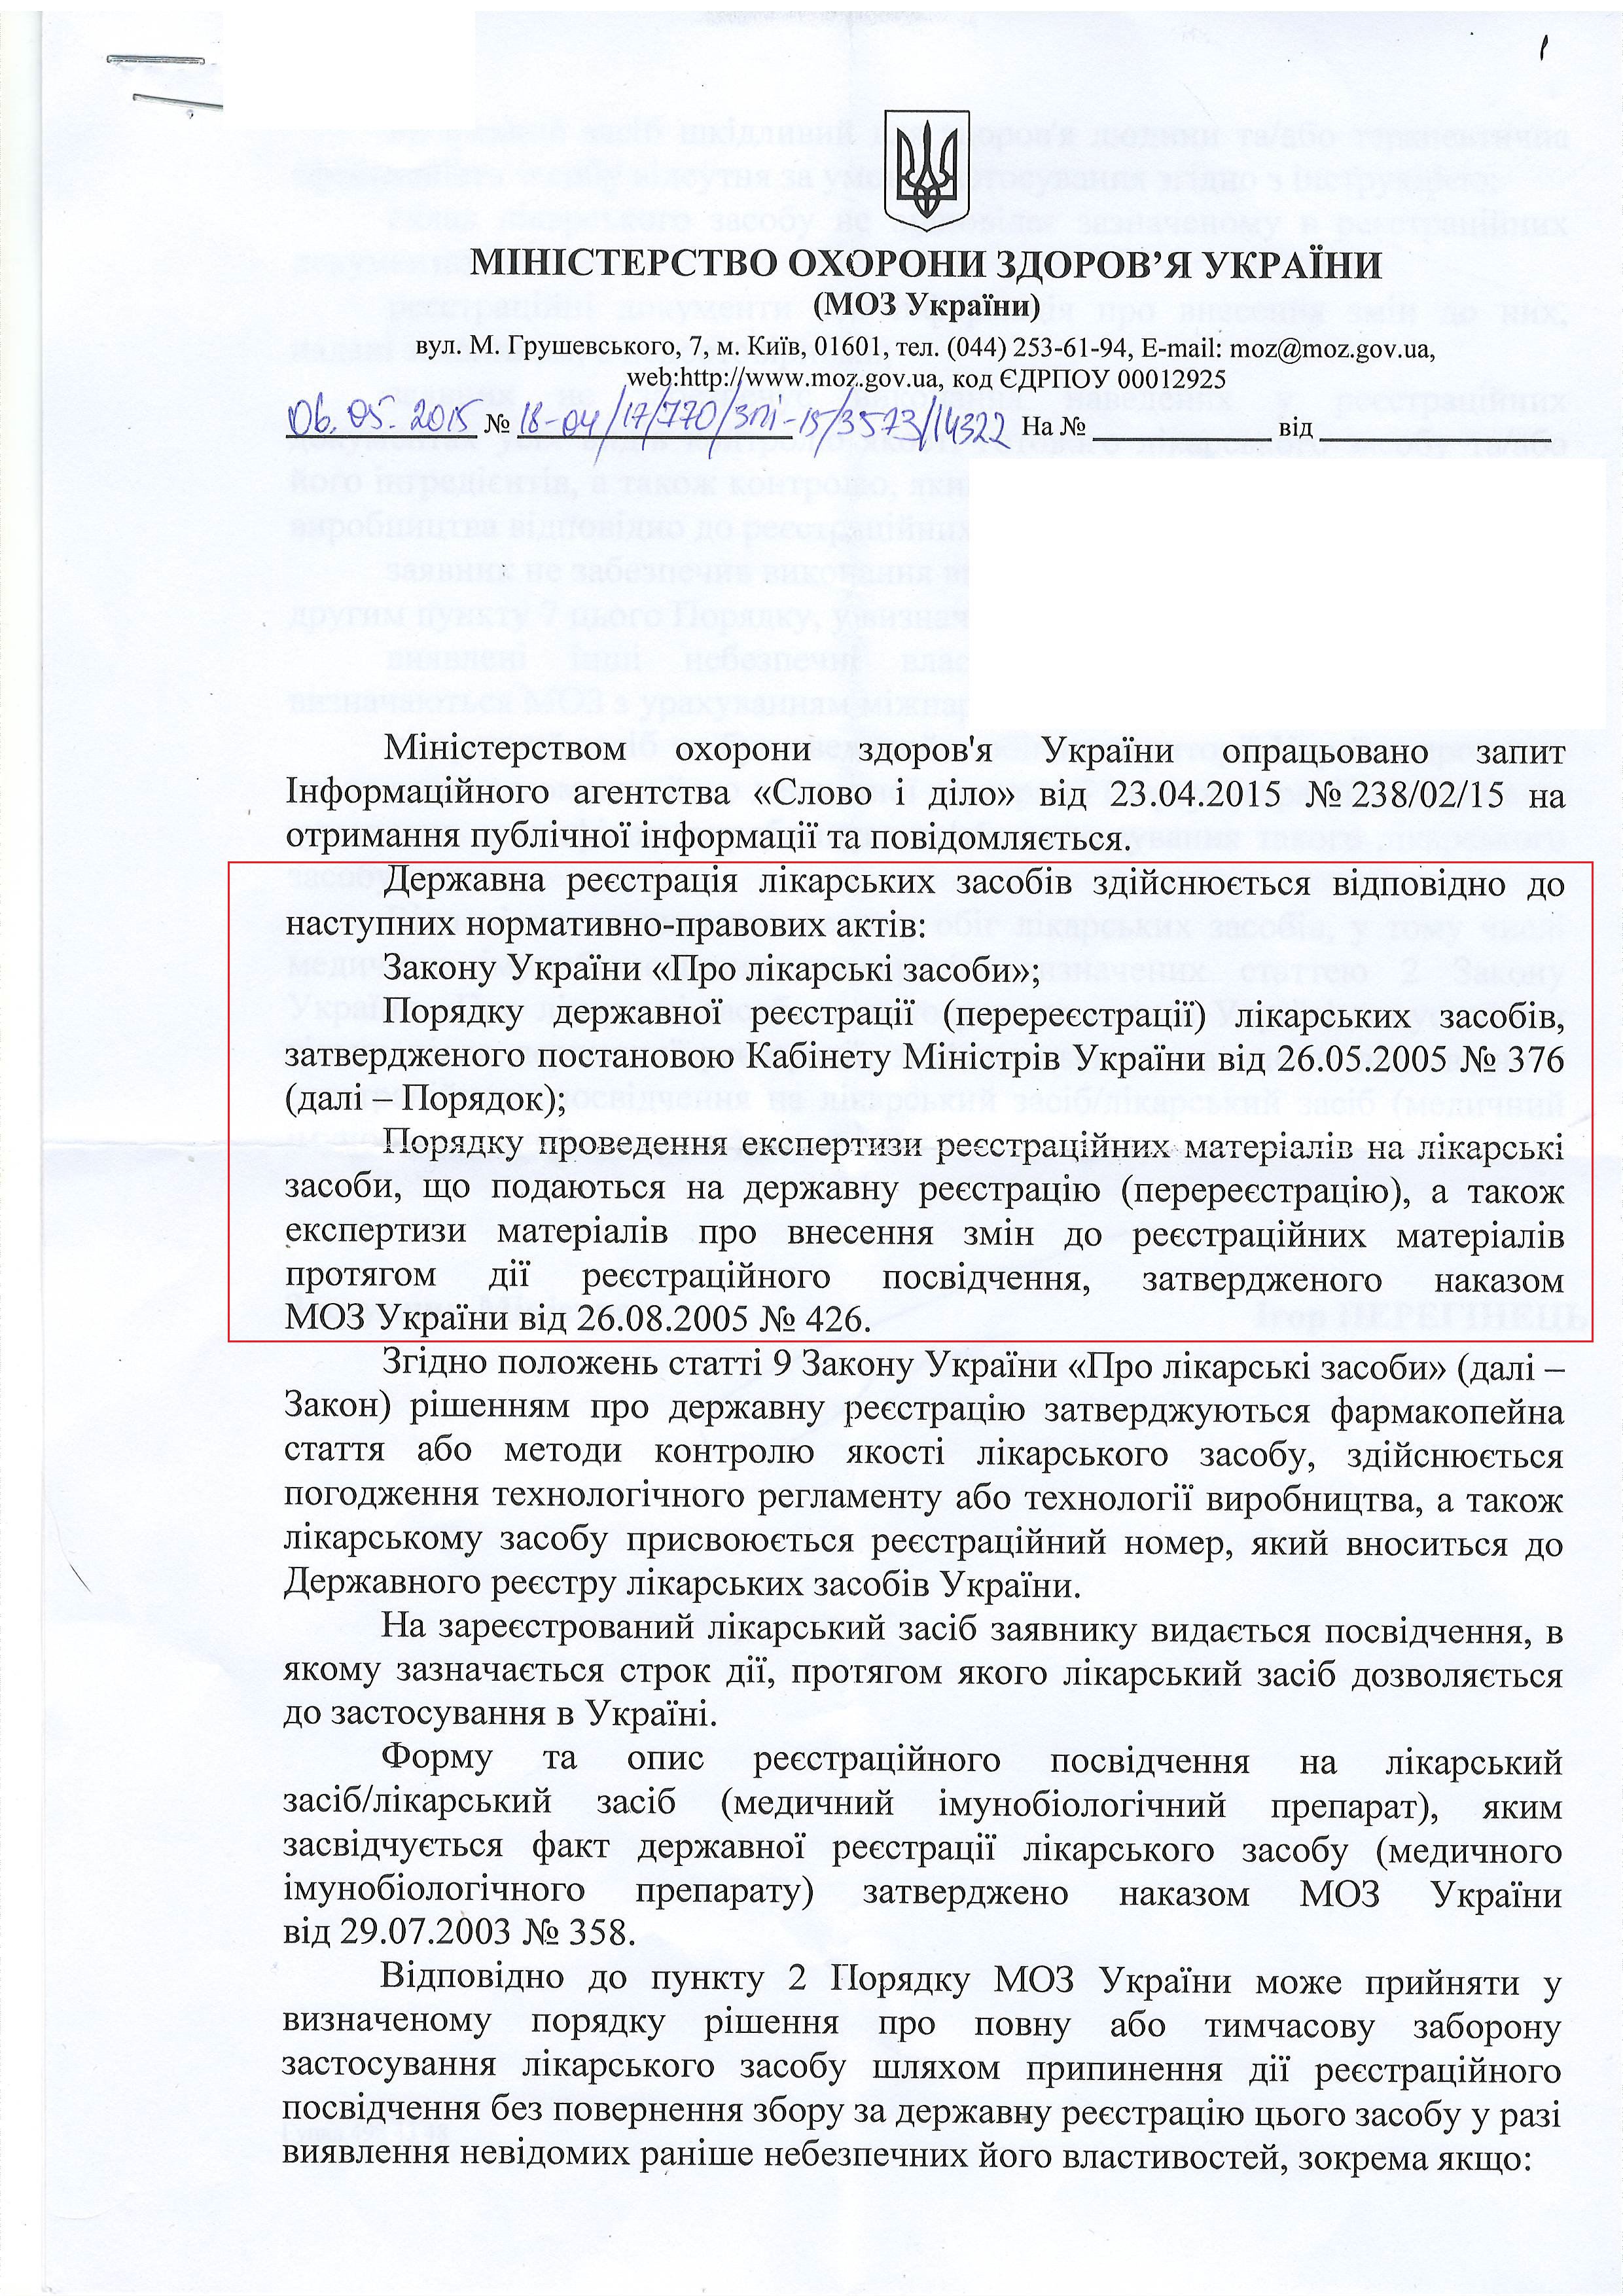 лист міністерства охорони здоров'я України  від 6 травня 2015 року